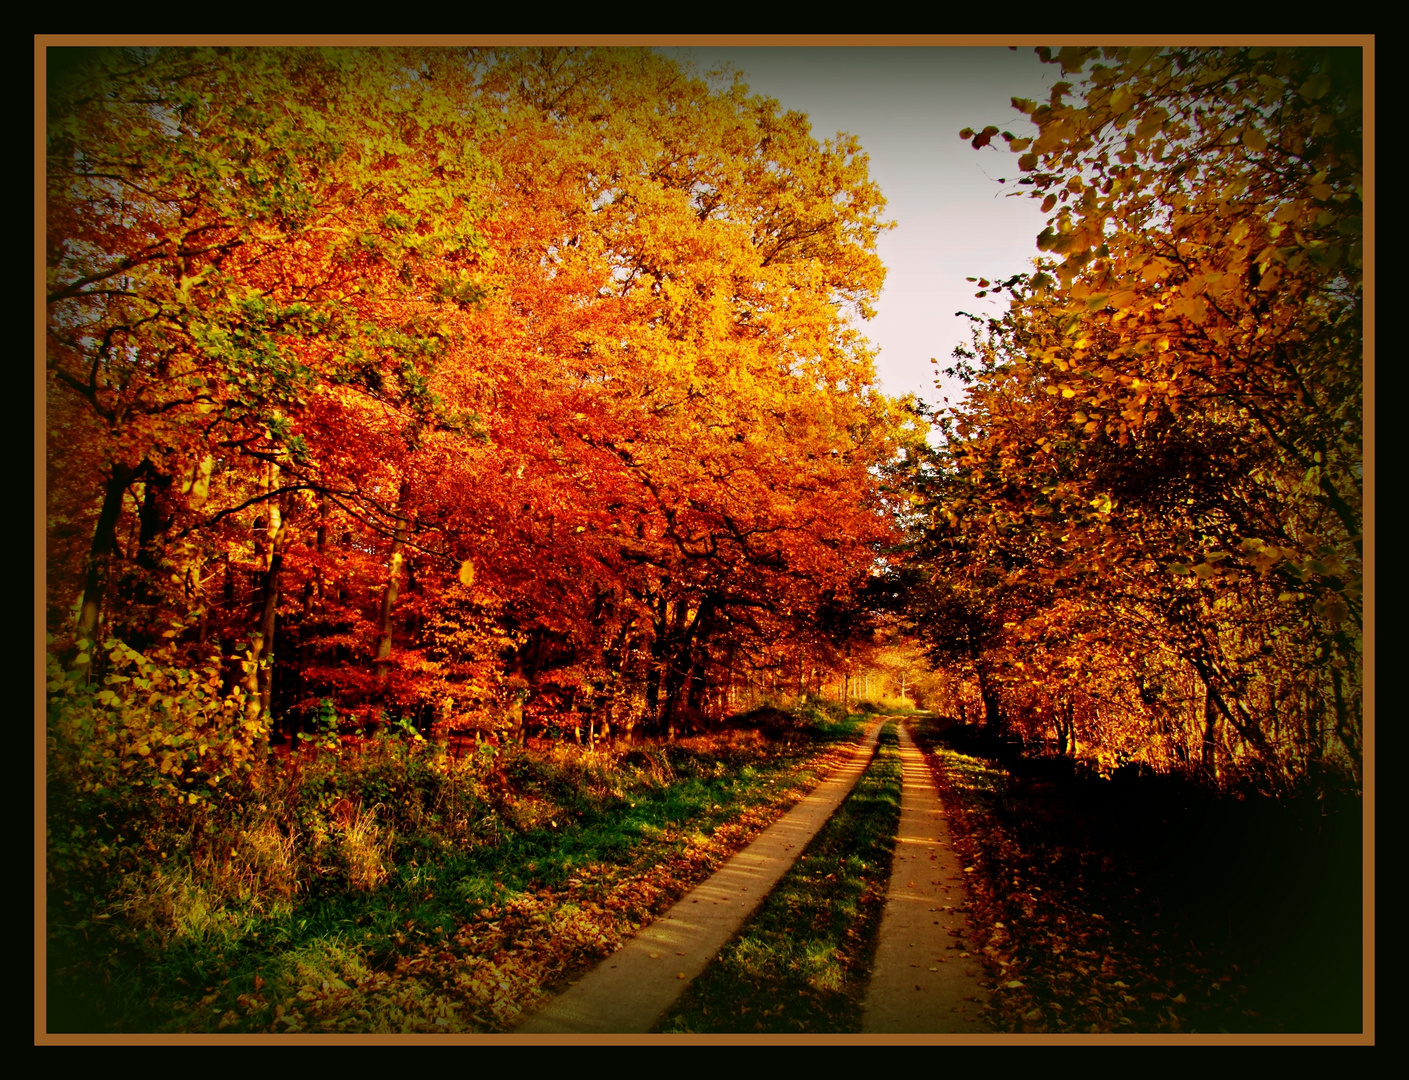 Herbstweg zum Träumen (Way of autumn)